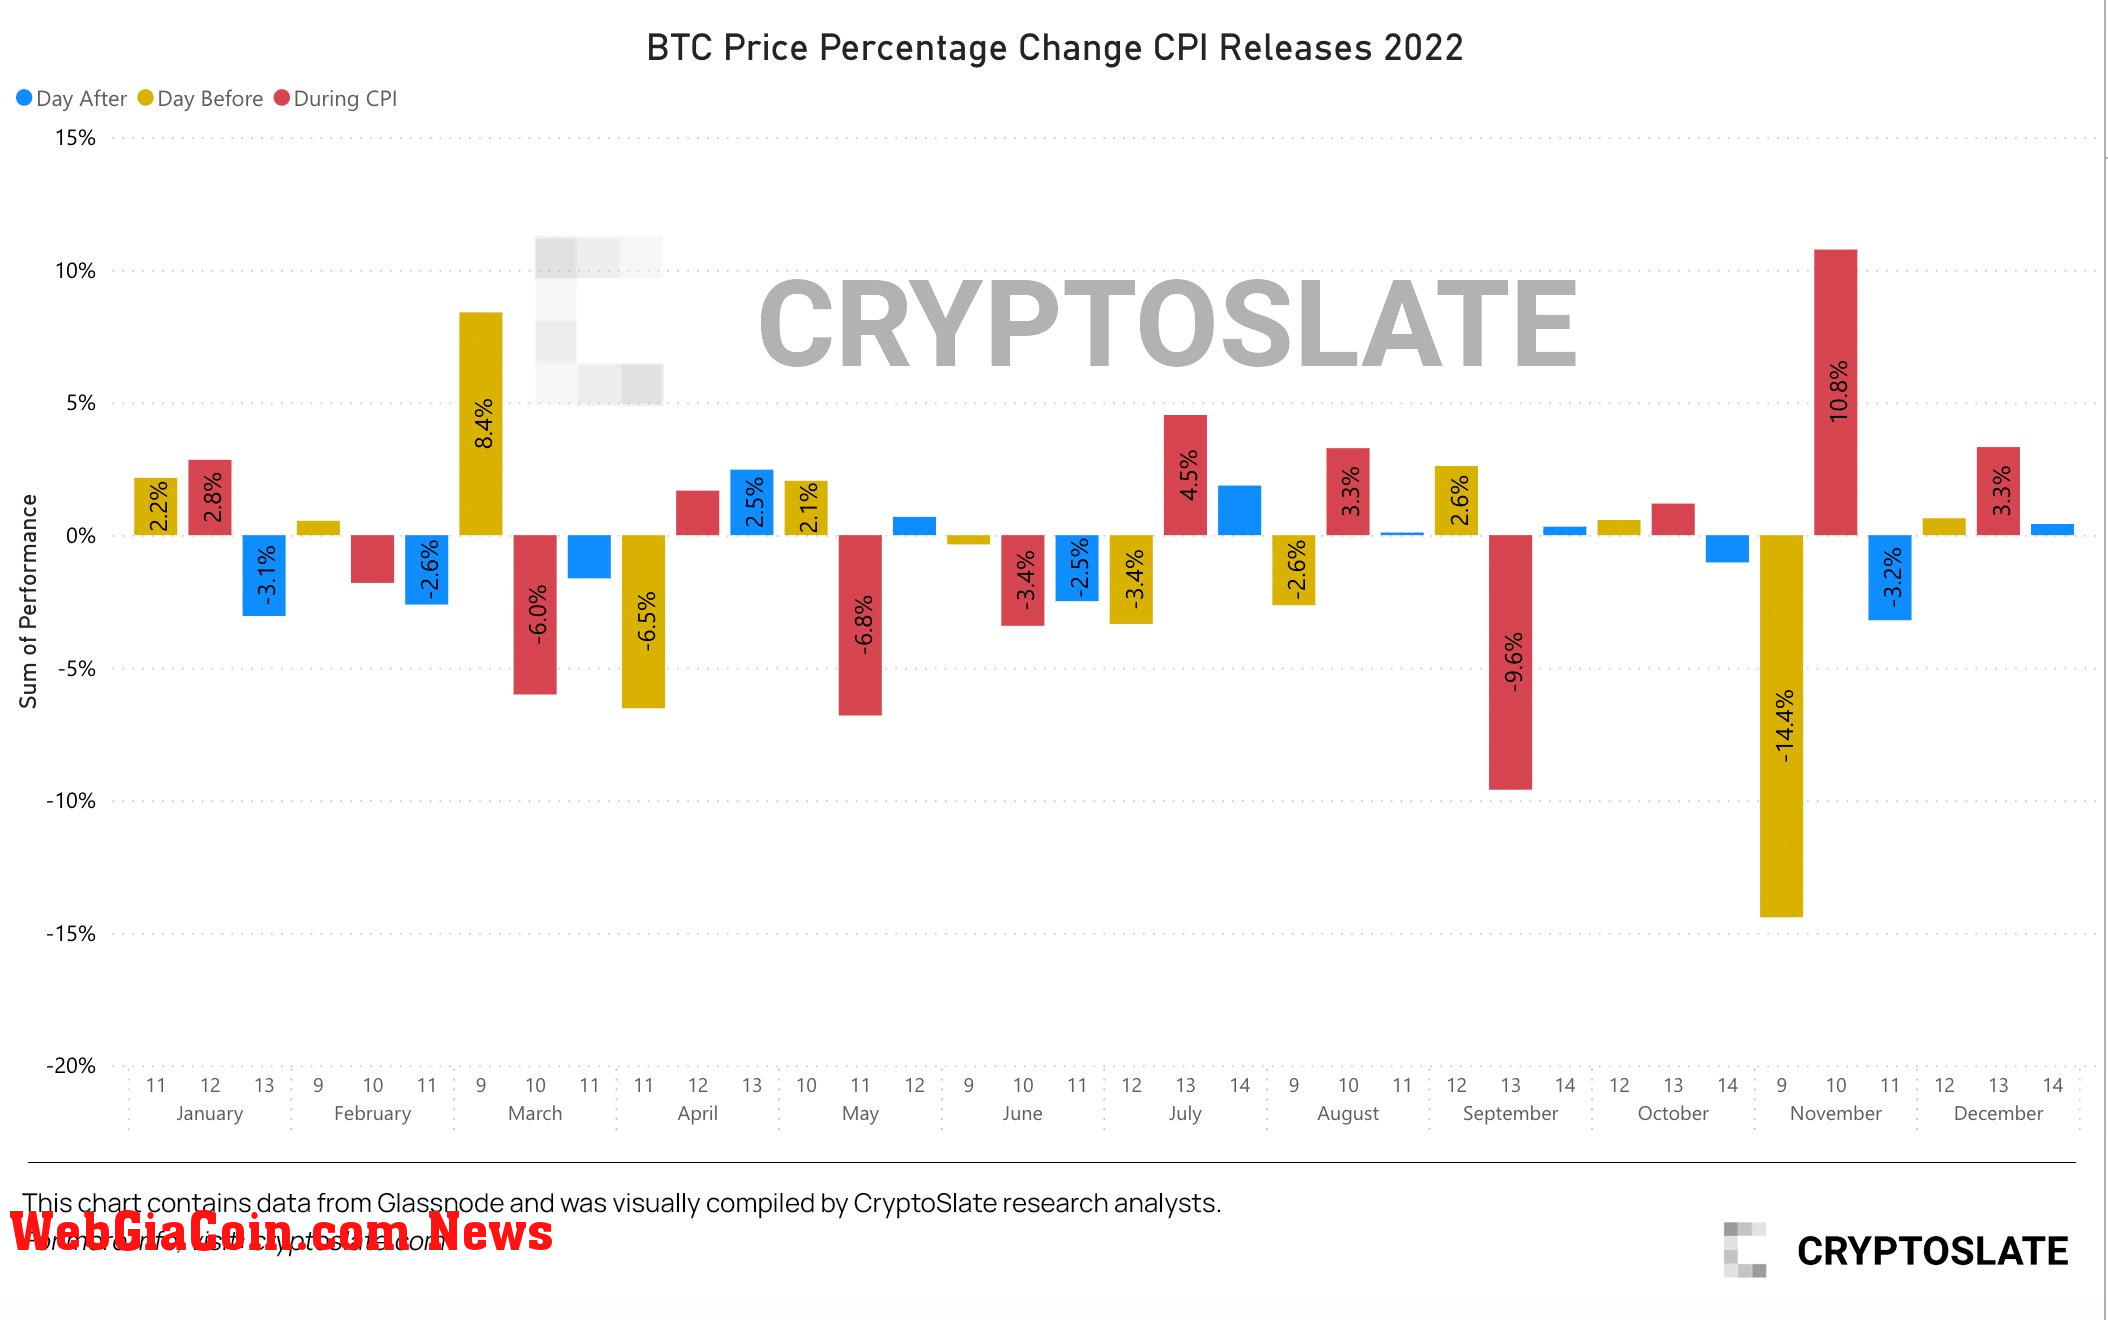 Bitcoin Price Percentage Change CPI